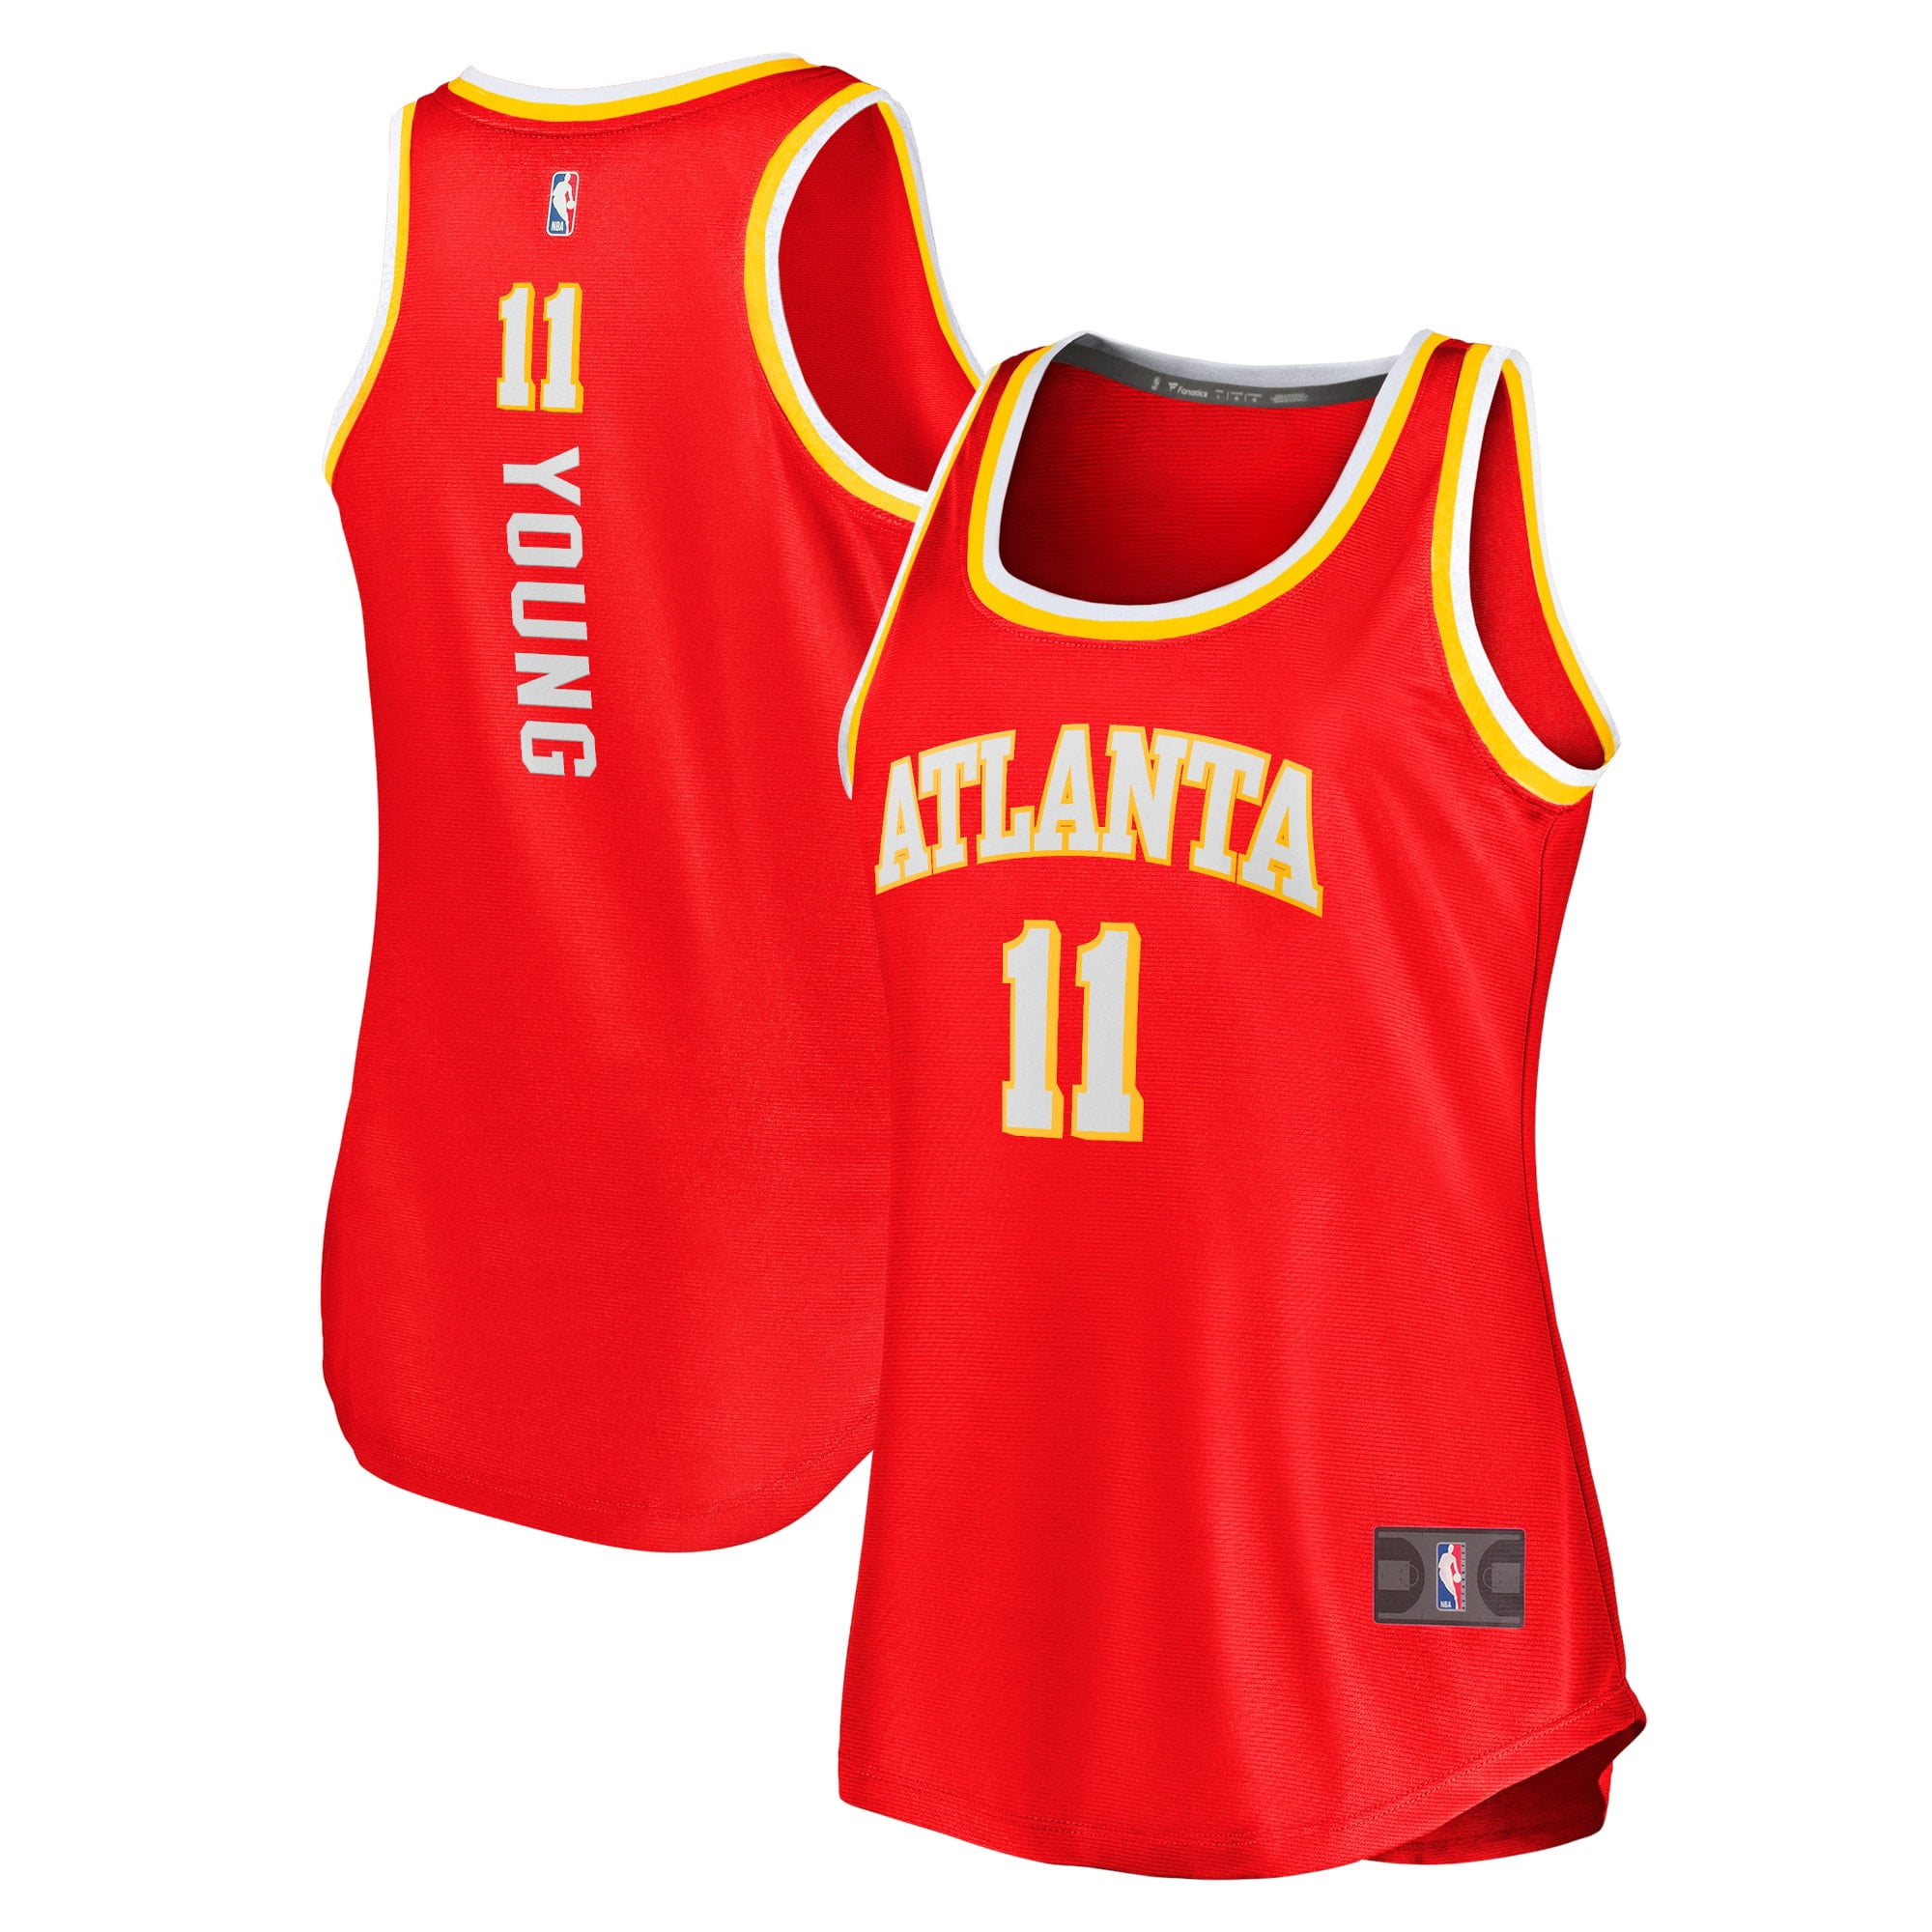 Women Atlanta Hawks NBA Jerseys for sale